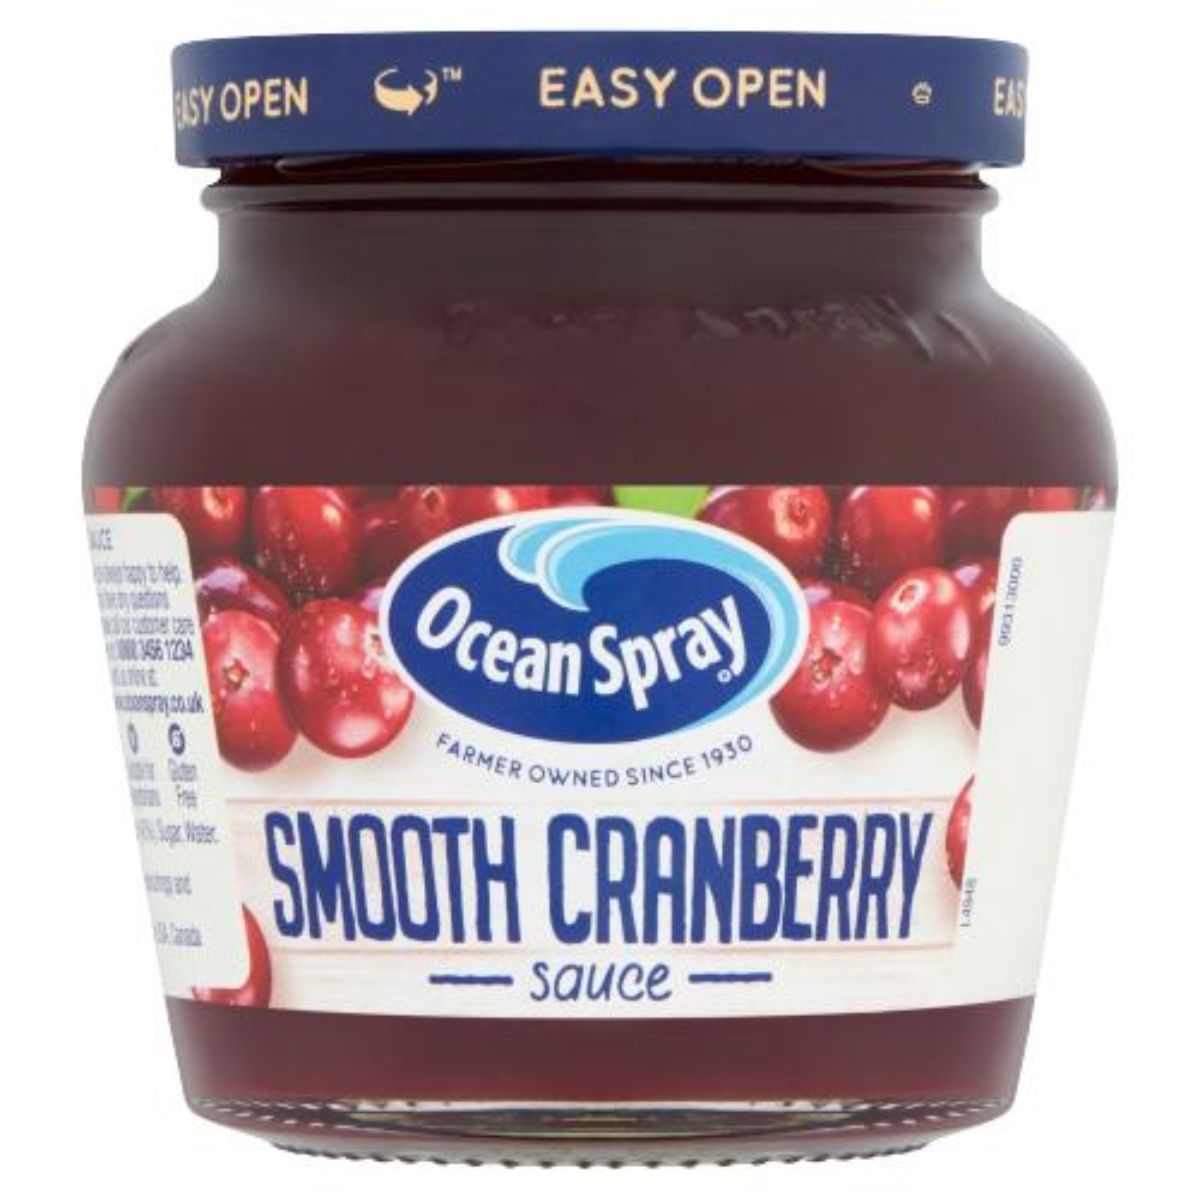 Ocean Spray - Smooth Cranberry Sauce - 250g.